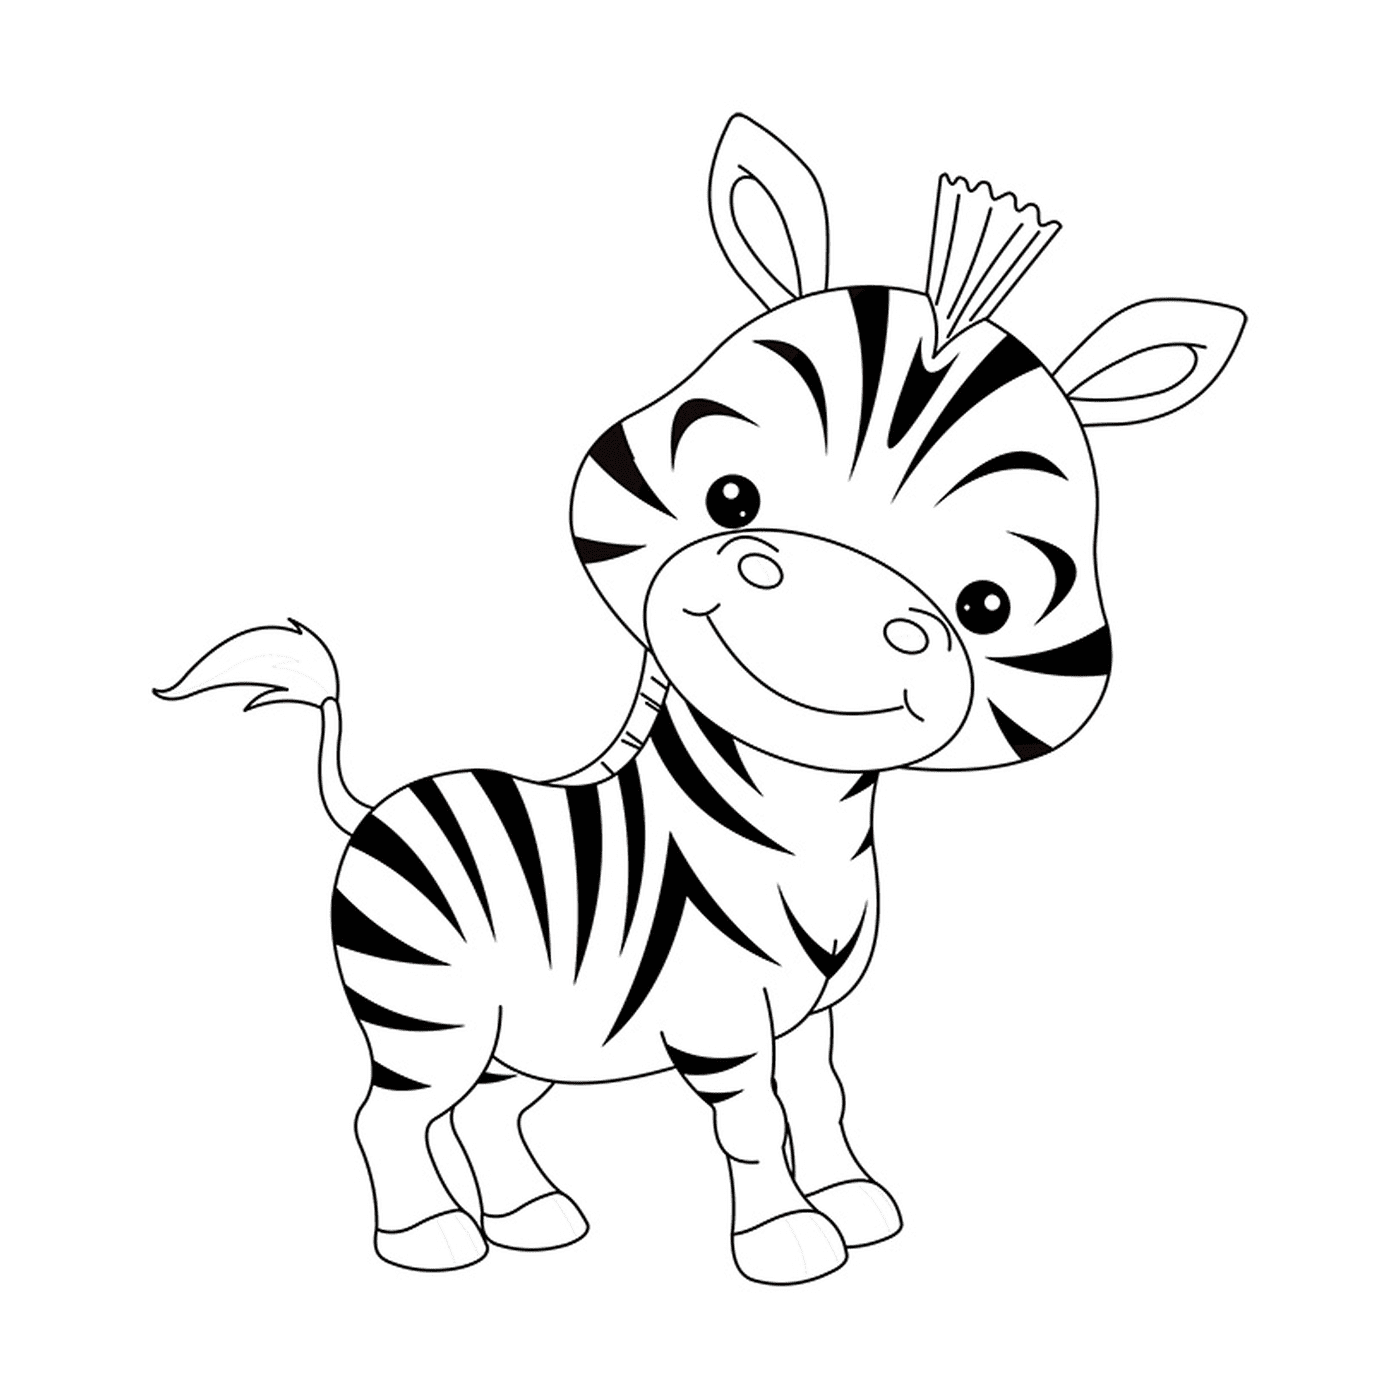  Забавный зебра-ребёнок 